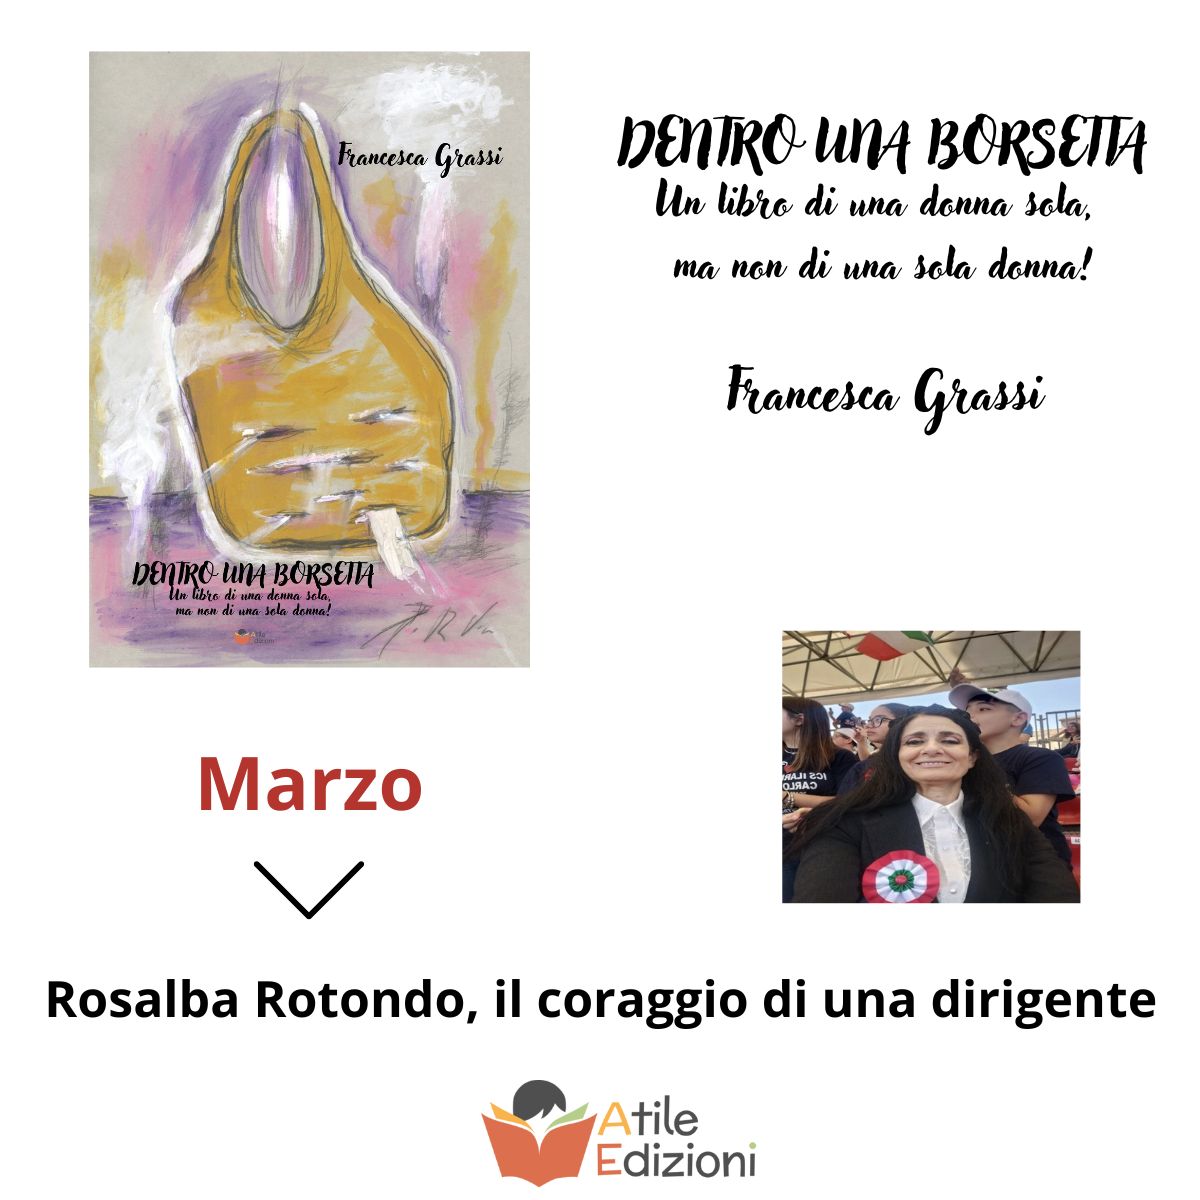 Rosalba Rotondo, il coraggio di una dirigente